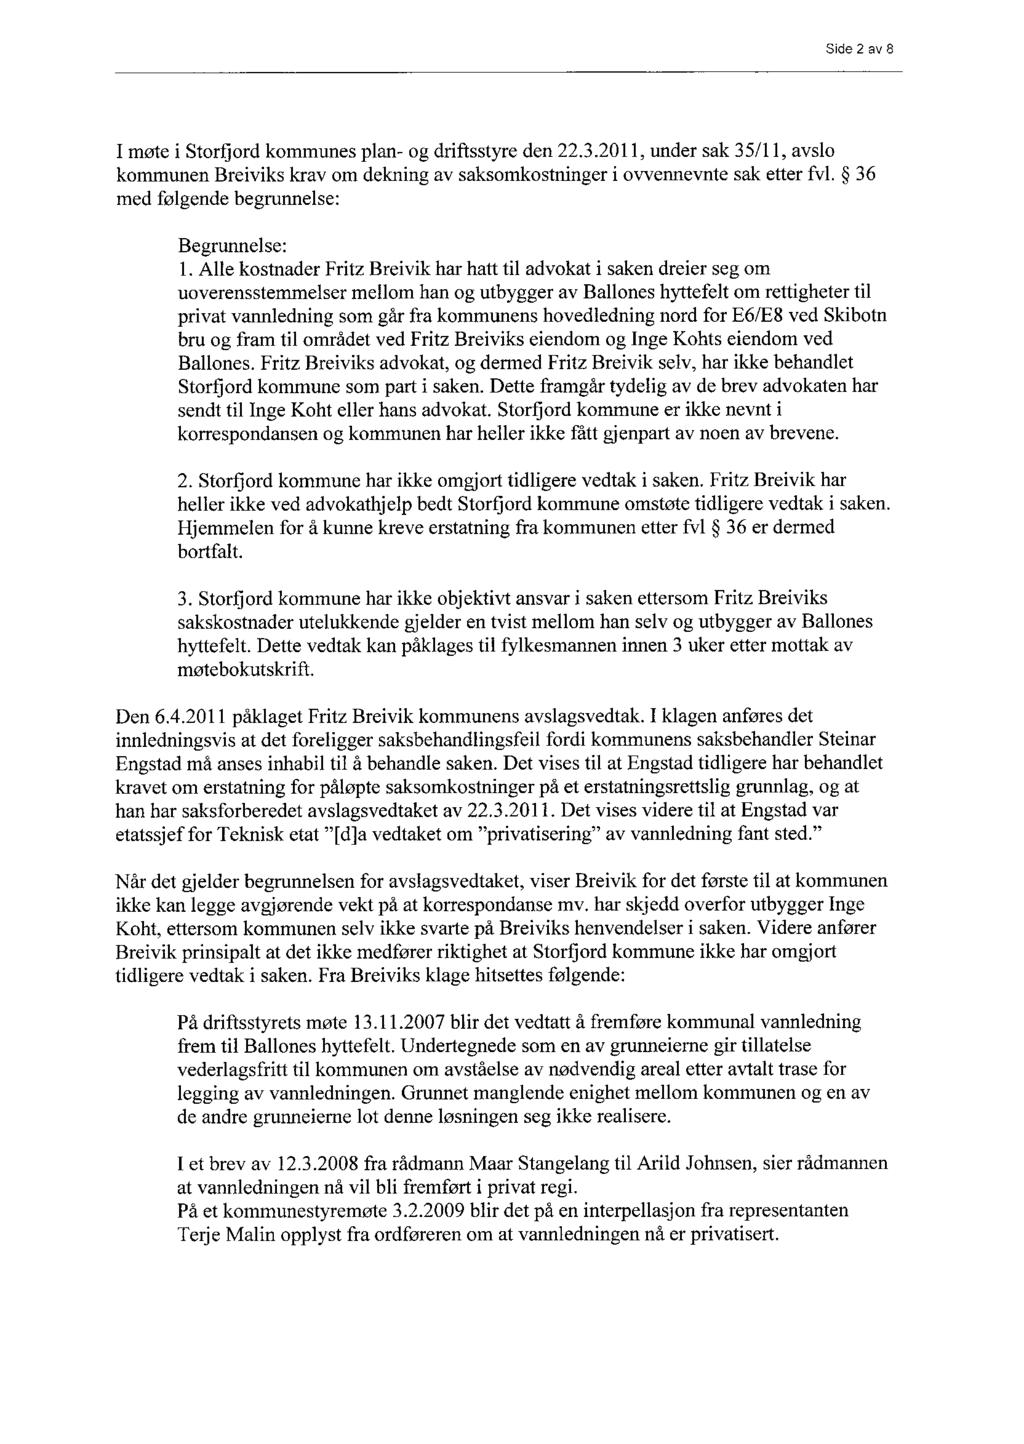 Side 2 av 8 I møte i Storfjord kommunes plan- og driftsstyre den 22.3.2011, under sak 35/11, avslo kommunen Breiviks krav om dekning av saksomkostninger i ovvennevnte sak etter fv1.